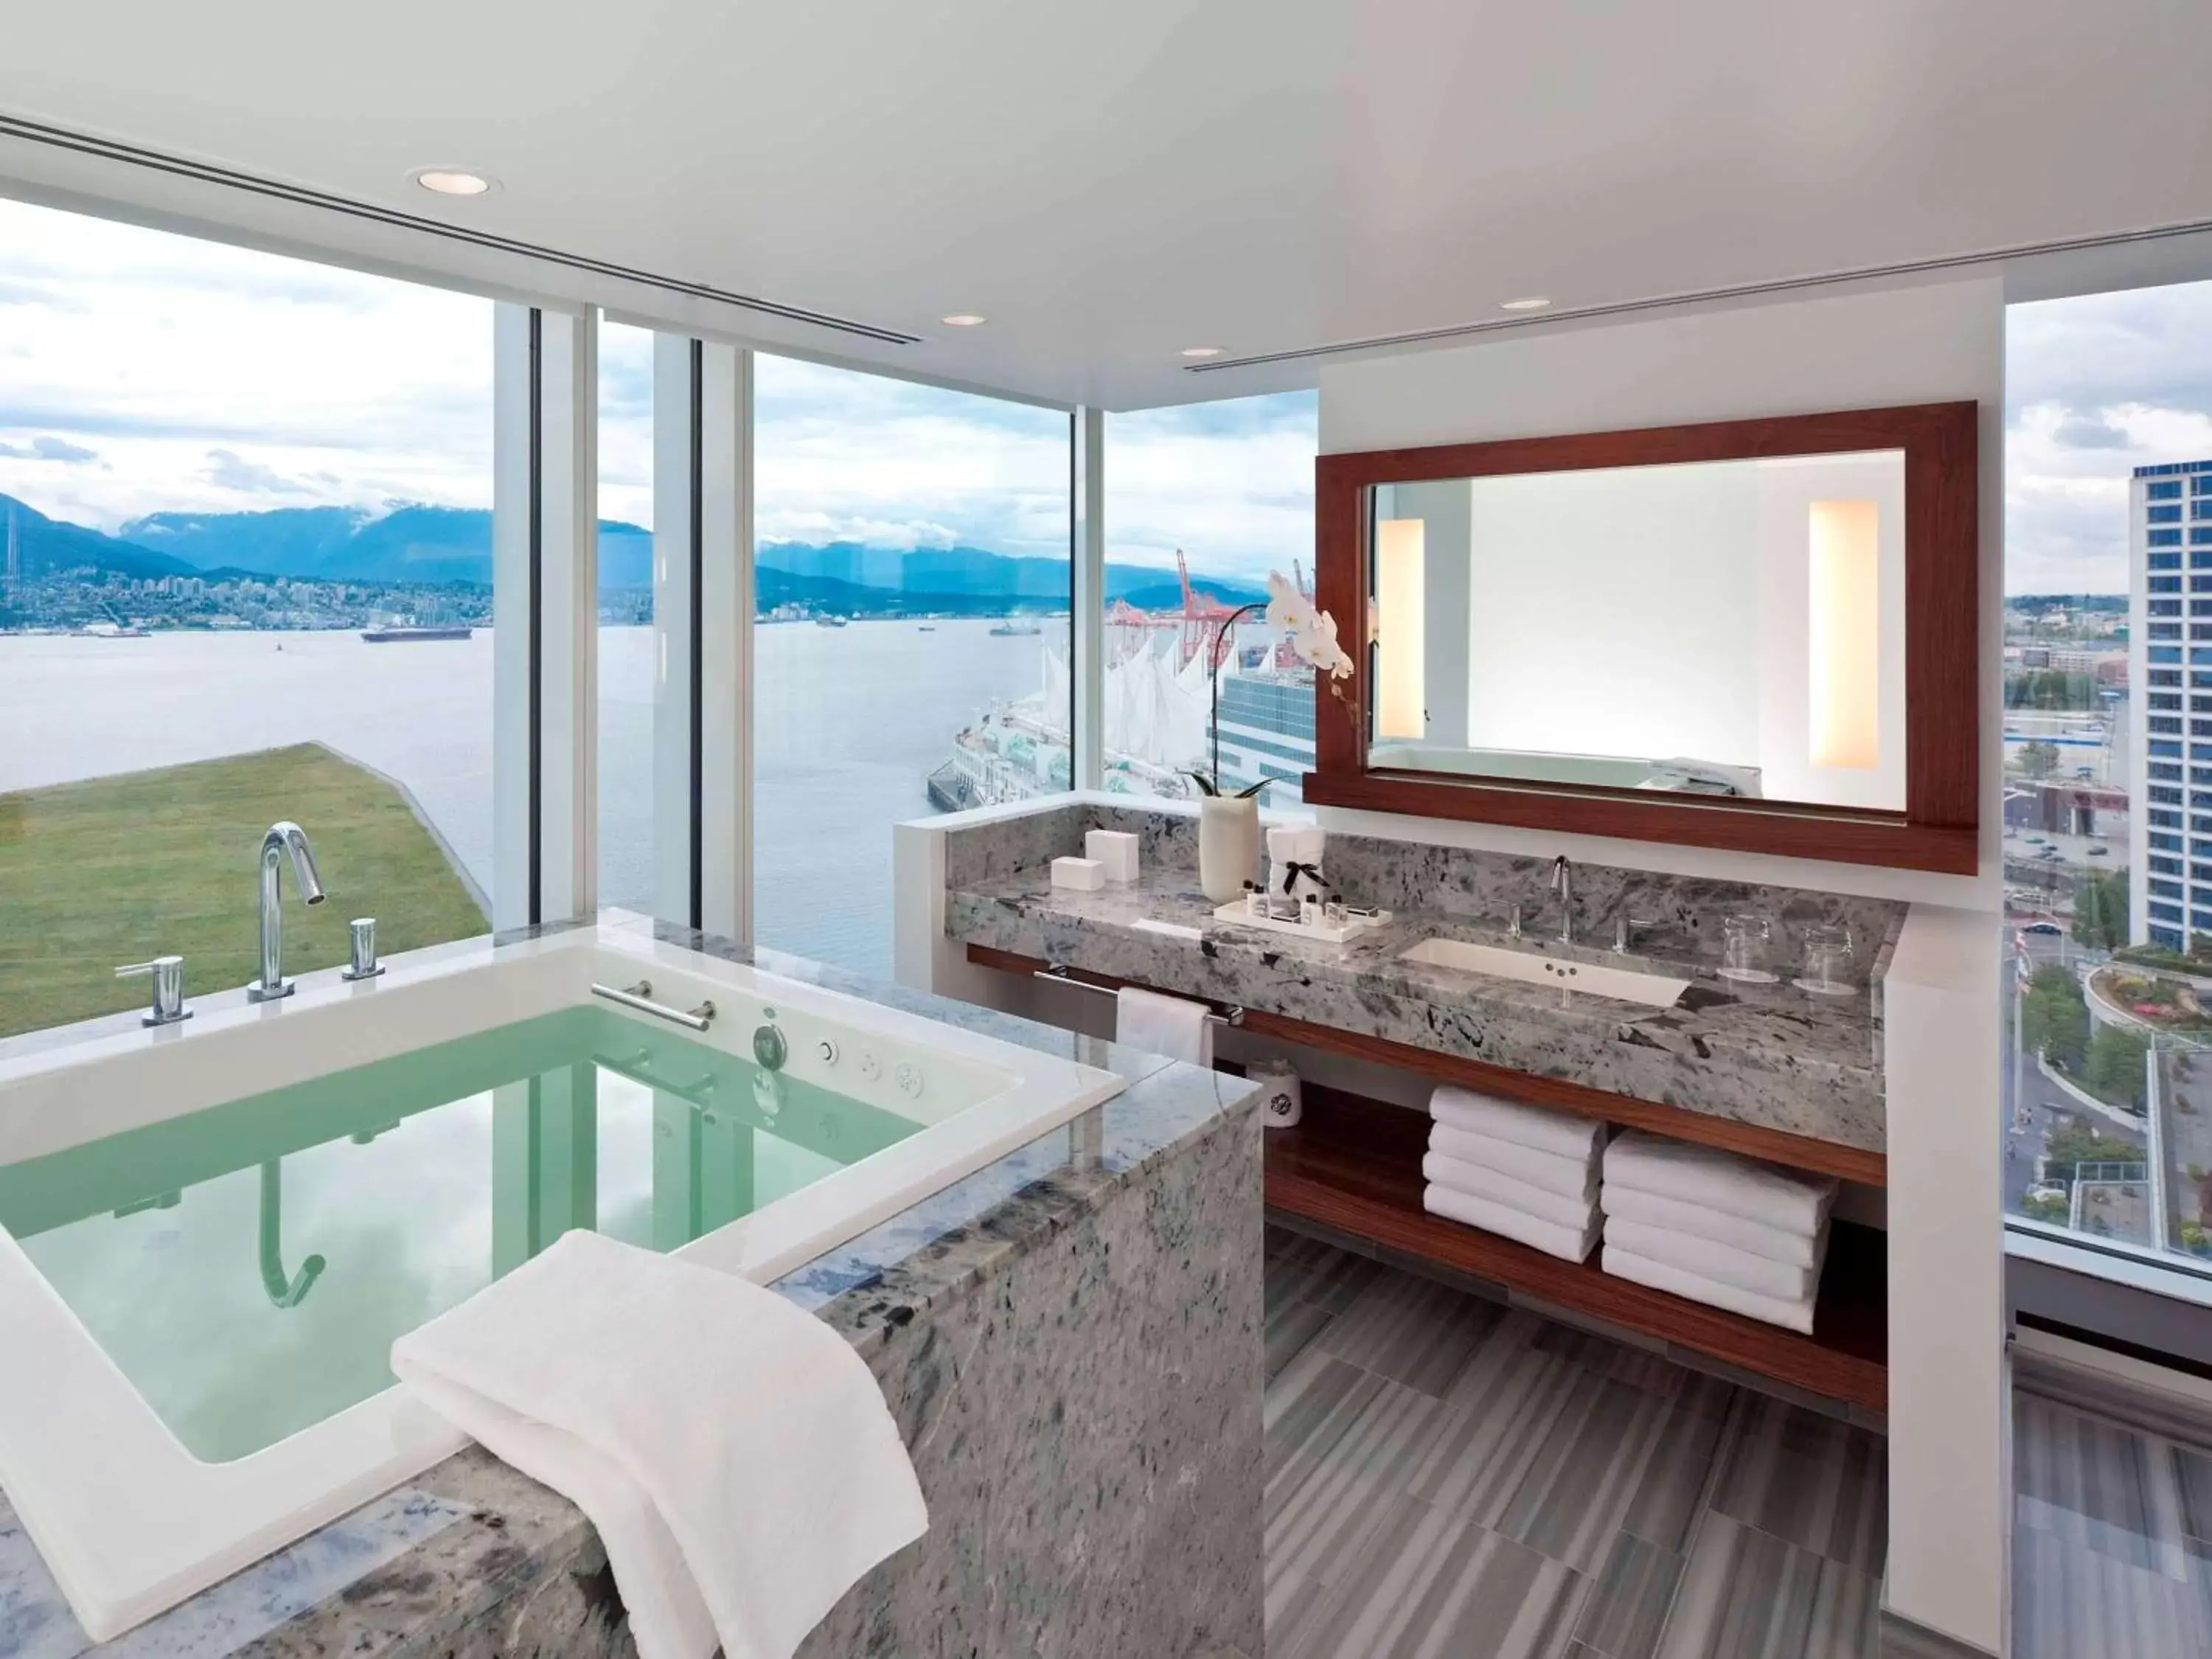 Bedroom, Bathroom in Fairmont Pacific Rim